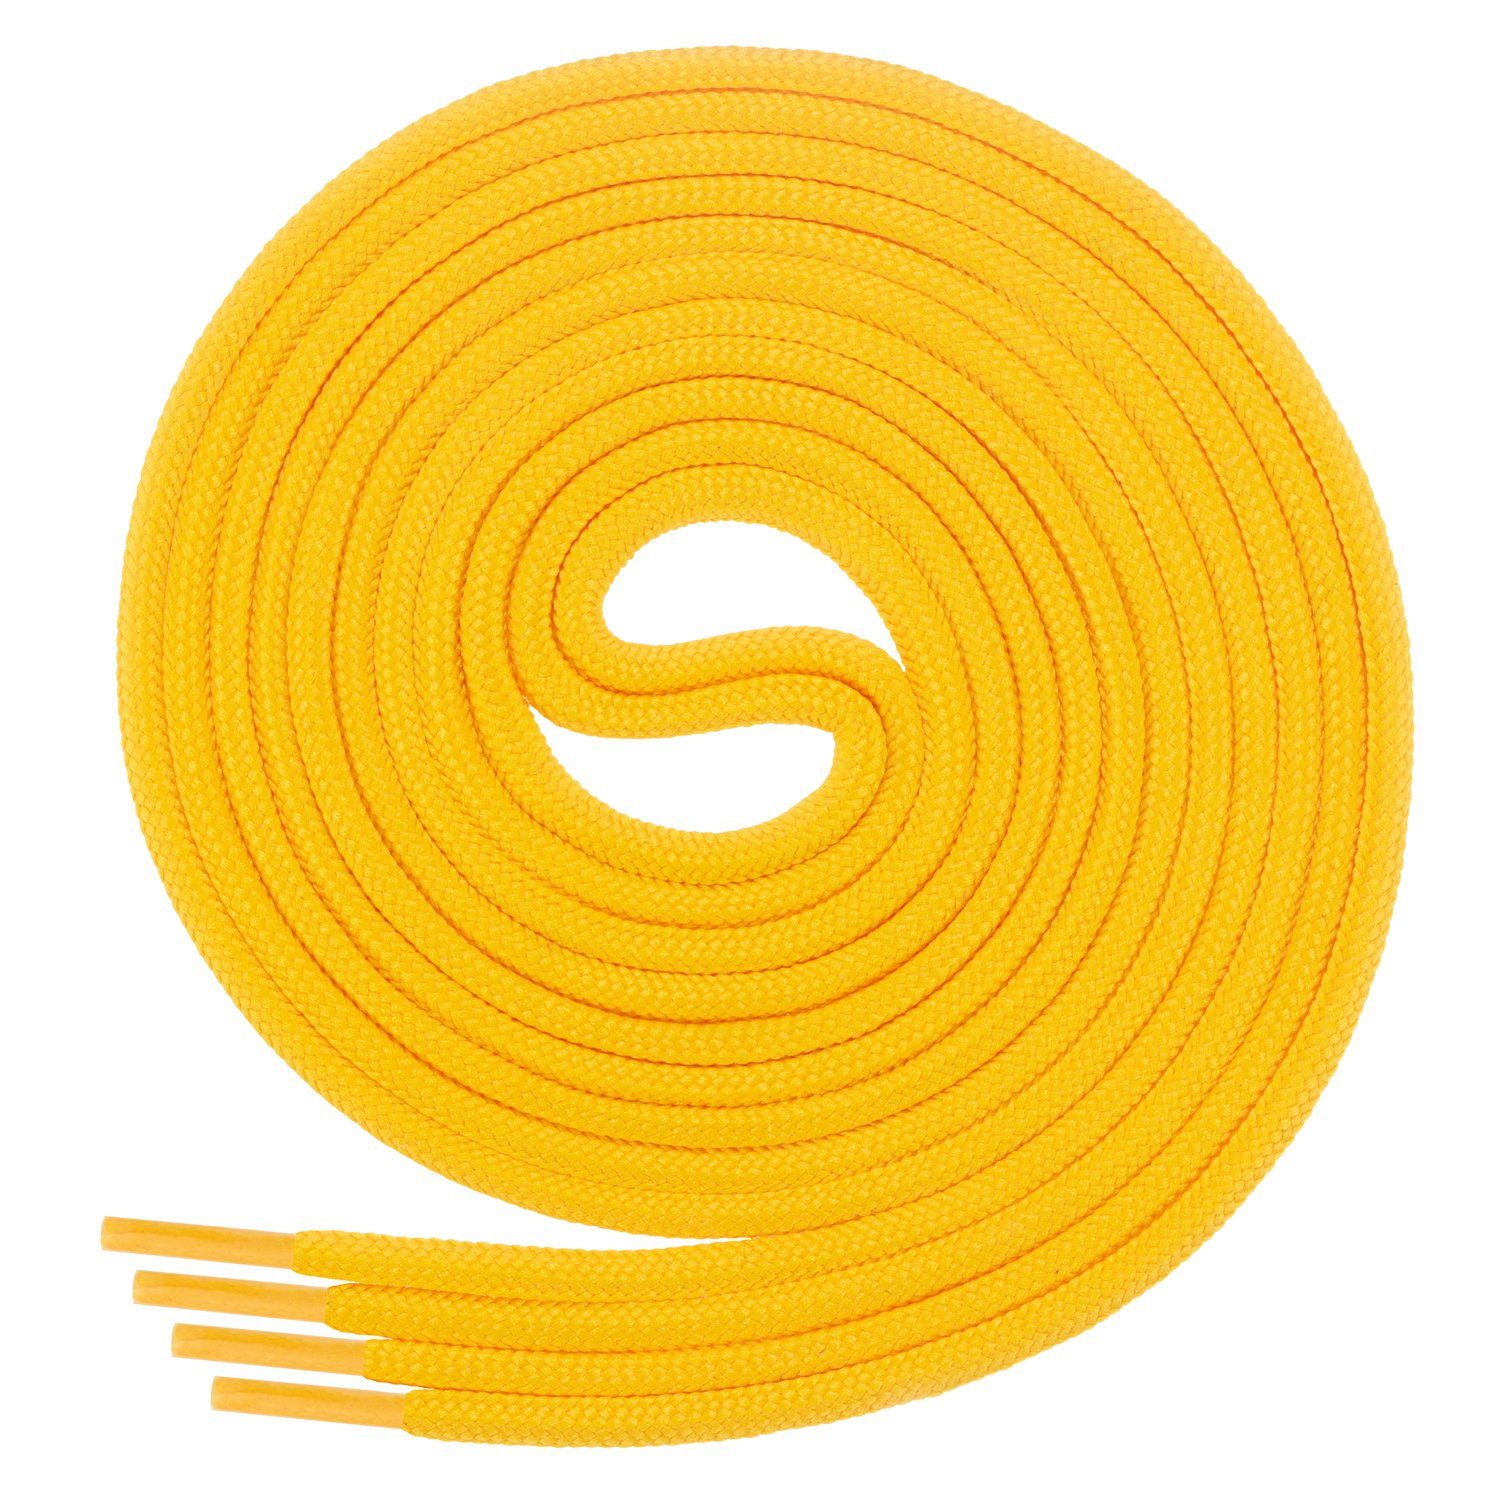 Di Ficchiano Schnürsenkel 1Paar runde Schnürsenkel ø 3mm für Business- und Lederschuhe, reißfest Gelb